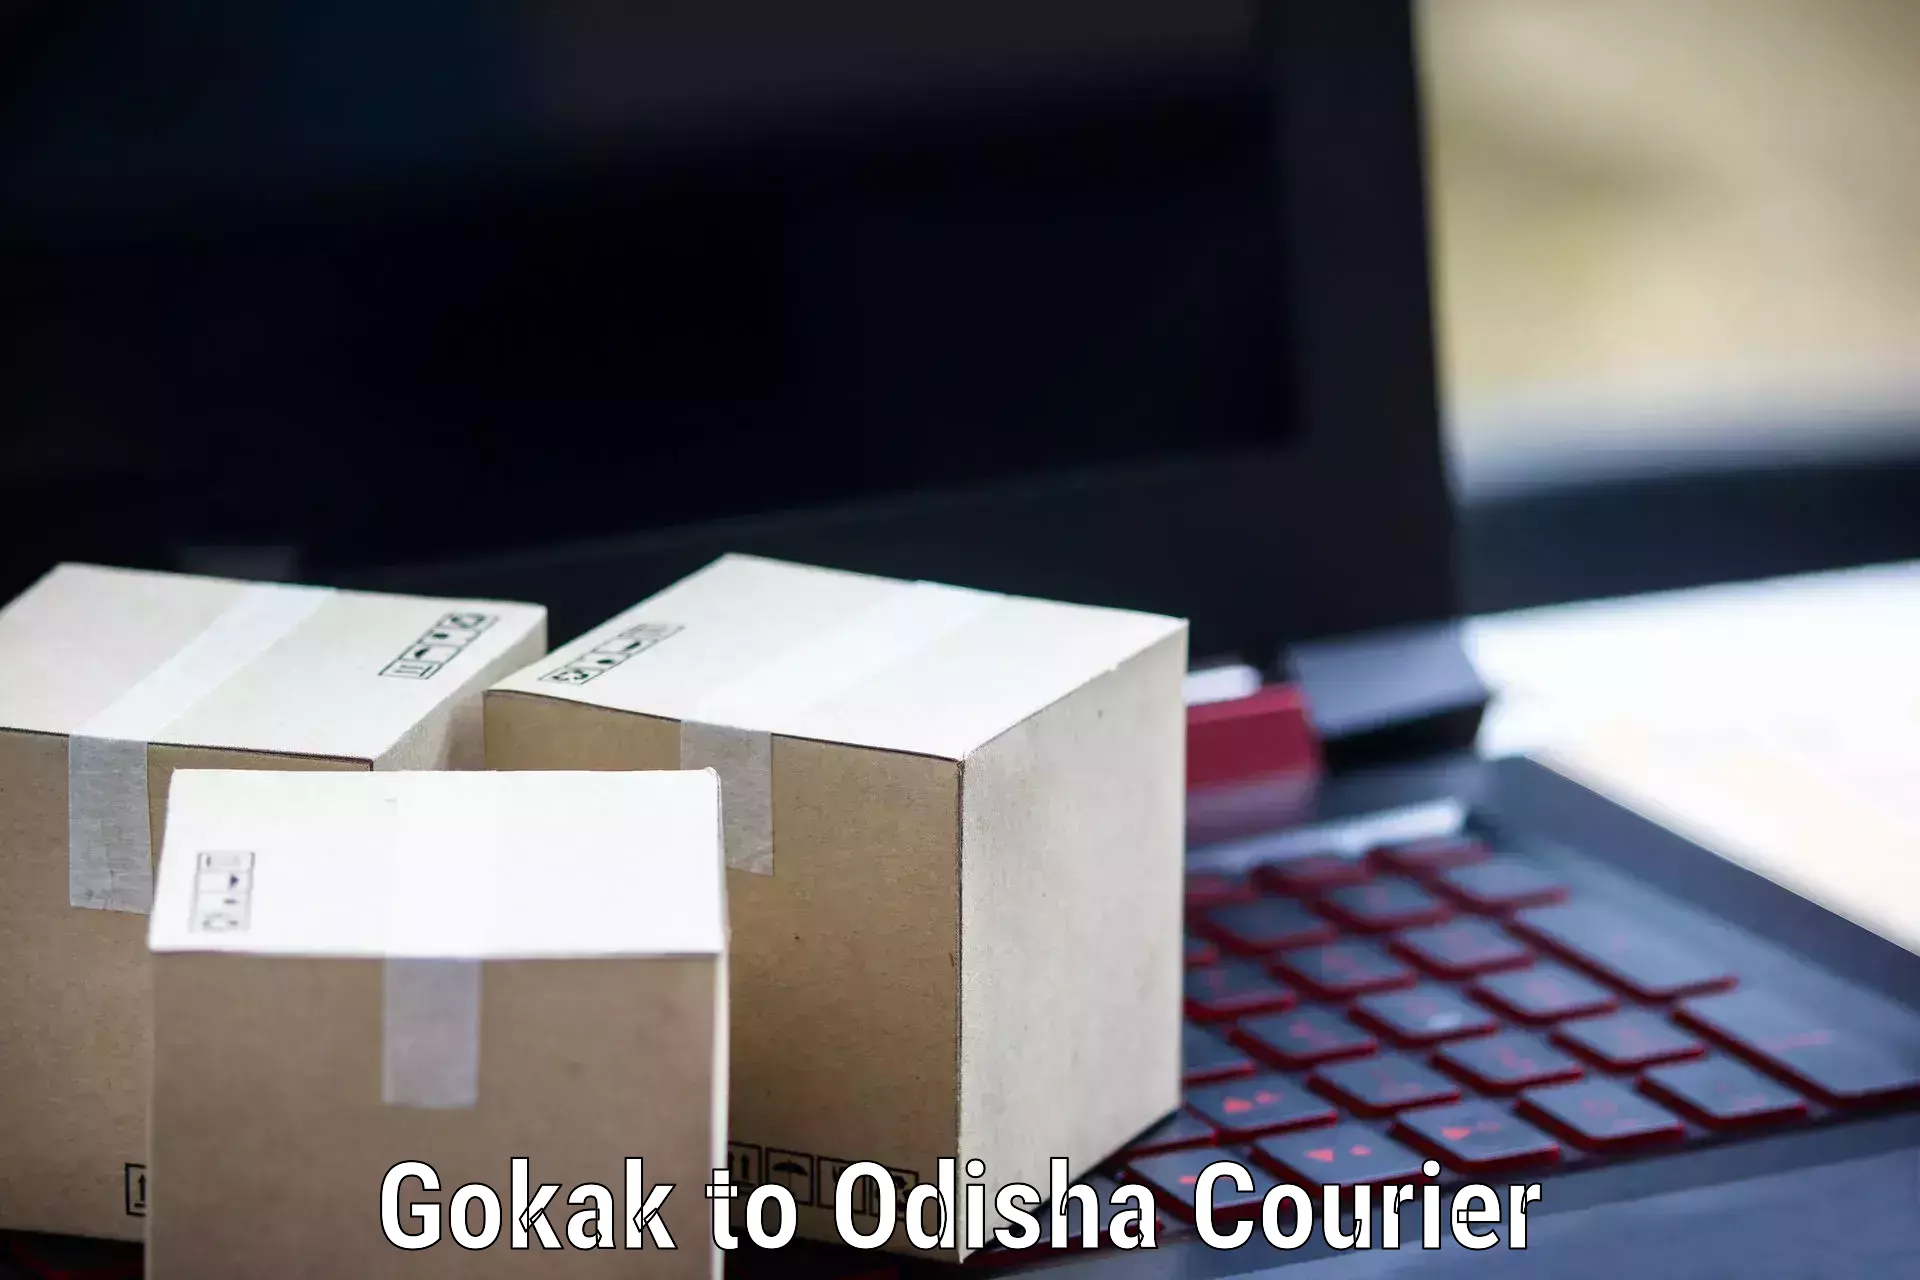 International courier networks in Gokak to Chandipur